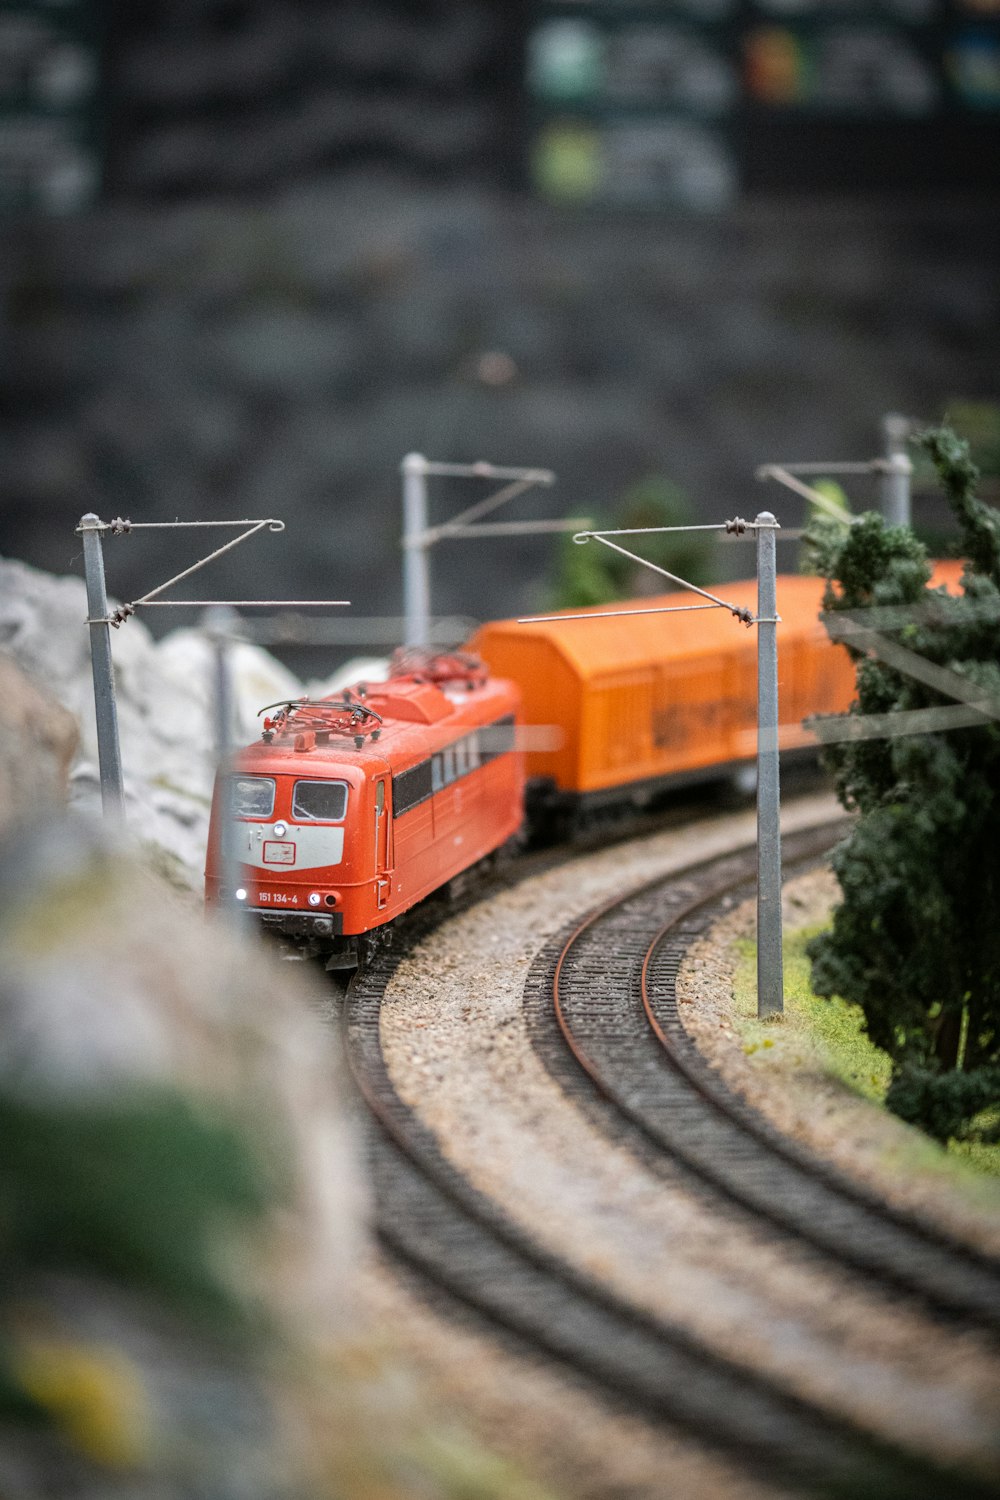 Un train jouet descend les voies ferrées